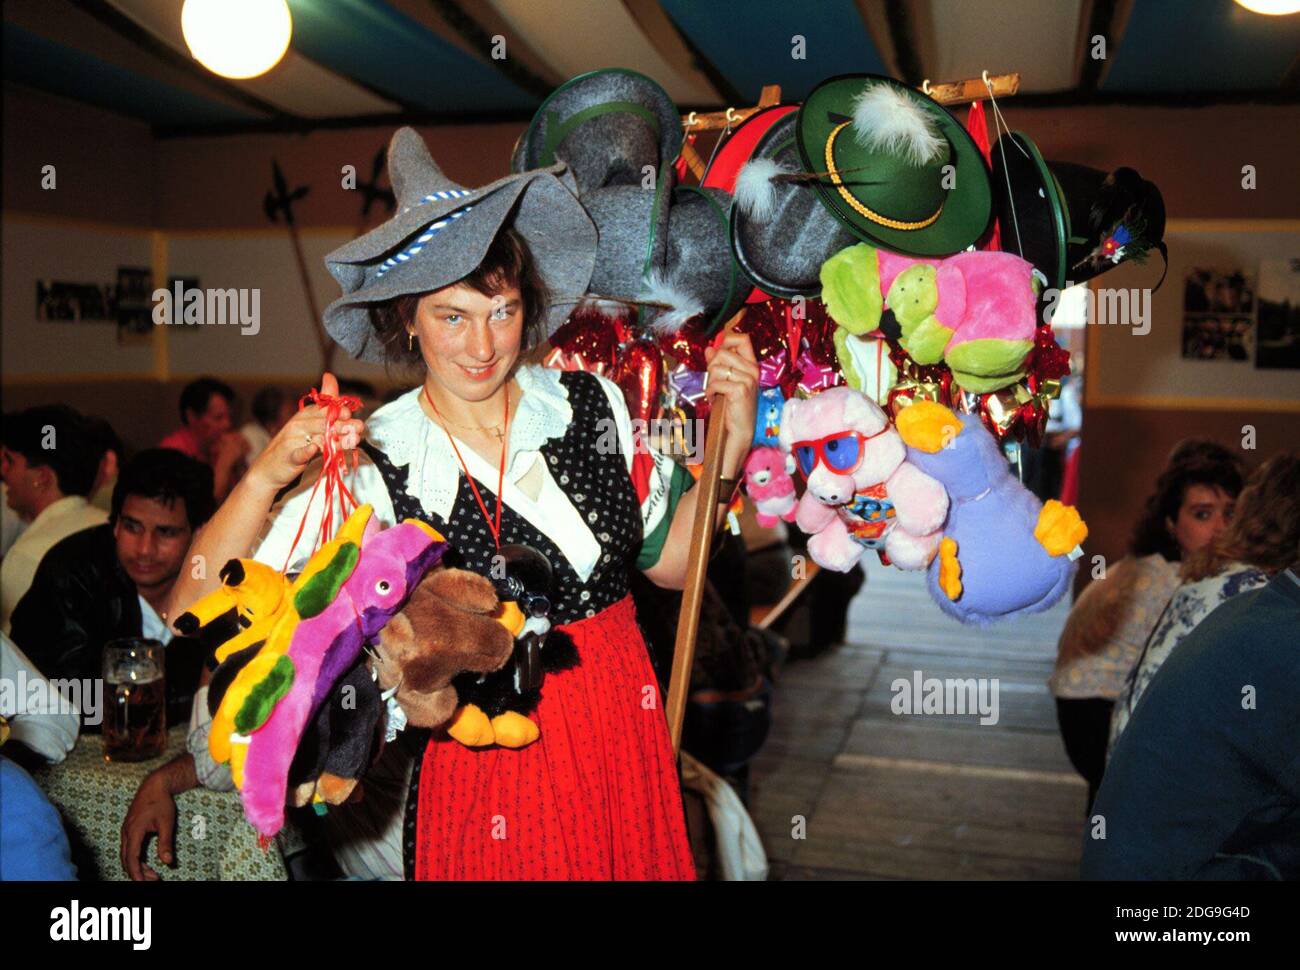 Impressionen vom Münchener Oktoberfest hier eine Frau die Hüte und Stofftiere verkauft, 1998. Impressions of the Munich Oktoberfest here a woman selling hats and stuffed animals, 1998. Stock Photo